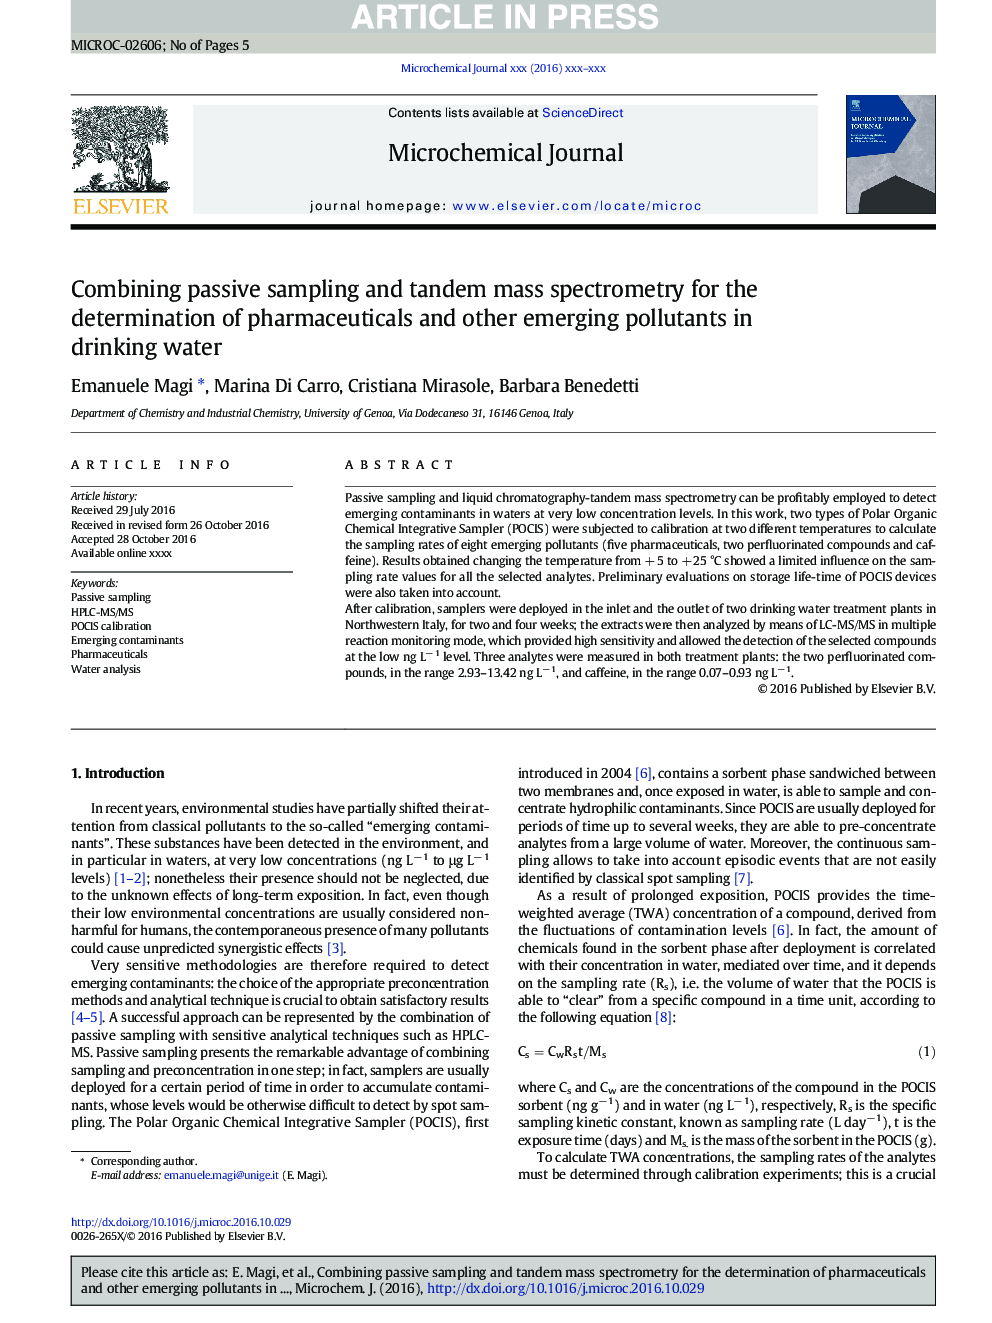 ترکیب نمونه گیری غیر فعال و طیف سنجی توده ای برای تعیین داروها و سایر آلودگی های ظهور در آب آشامیدنی